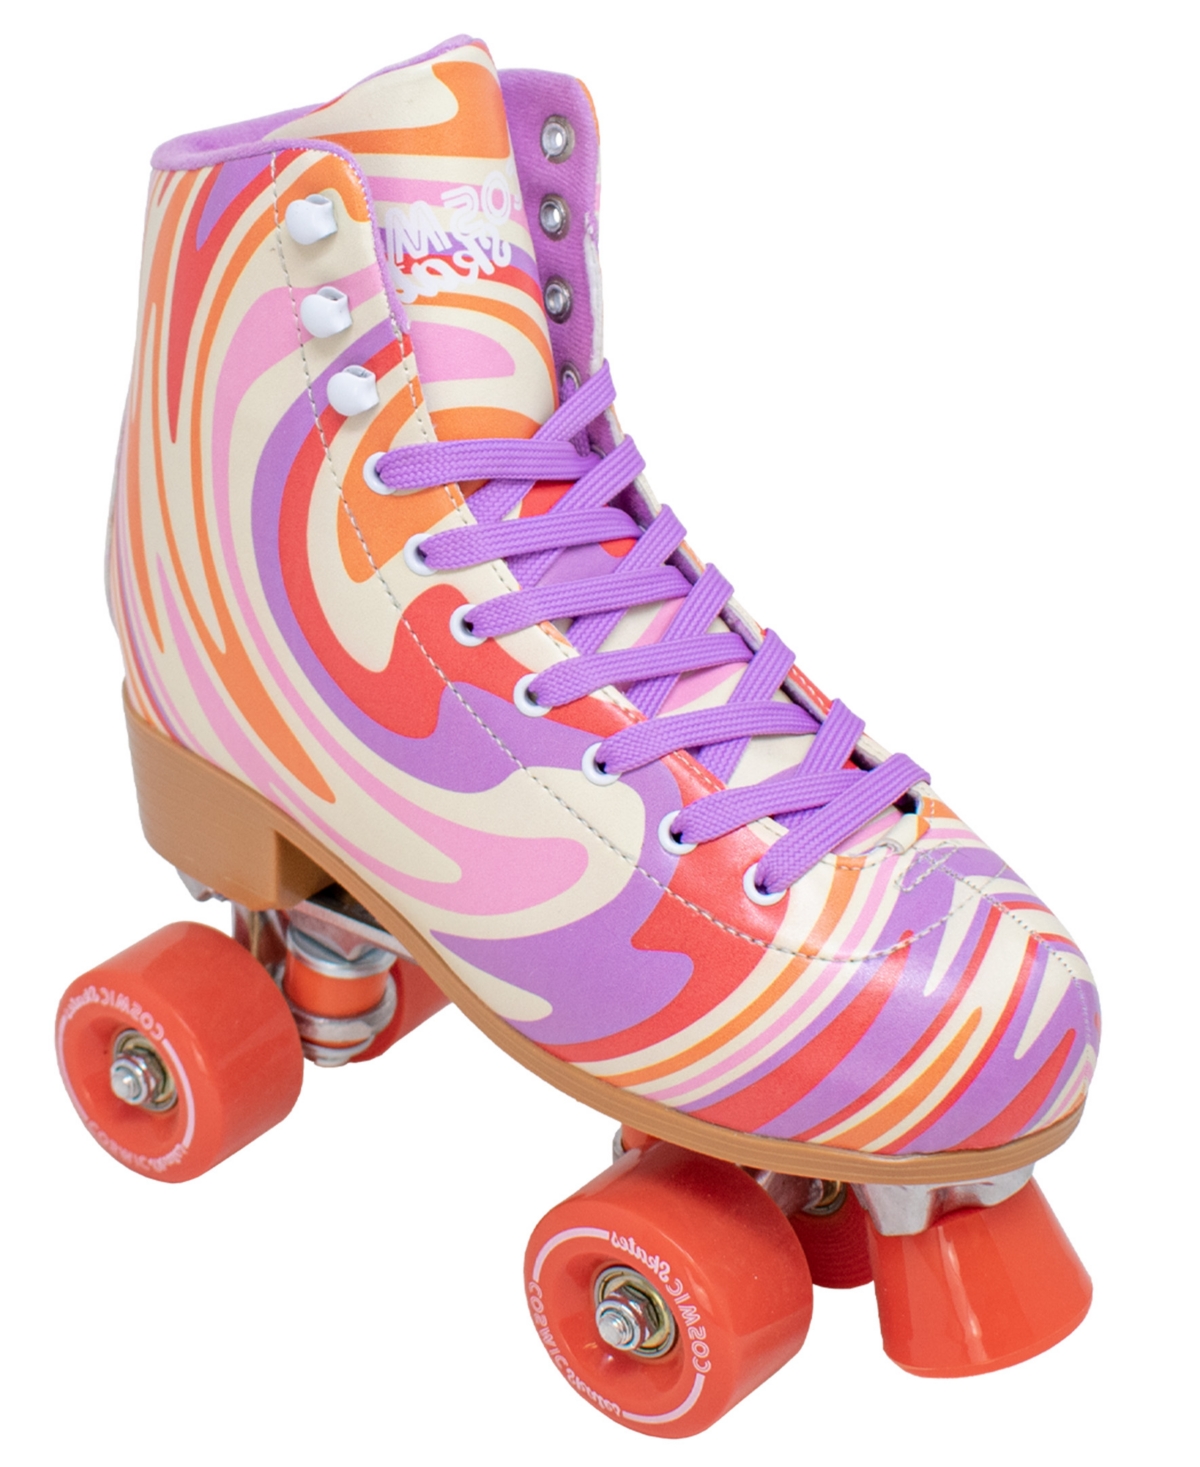 Women's Swirl Print Roller Skates - Multi